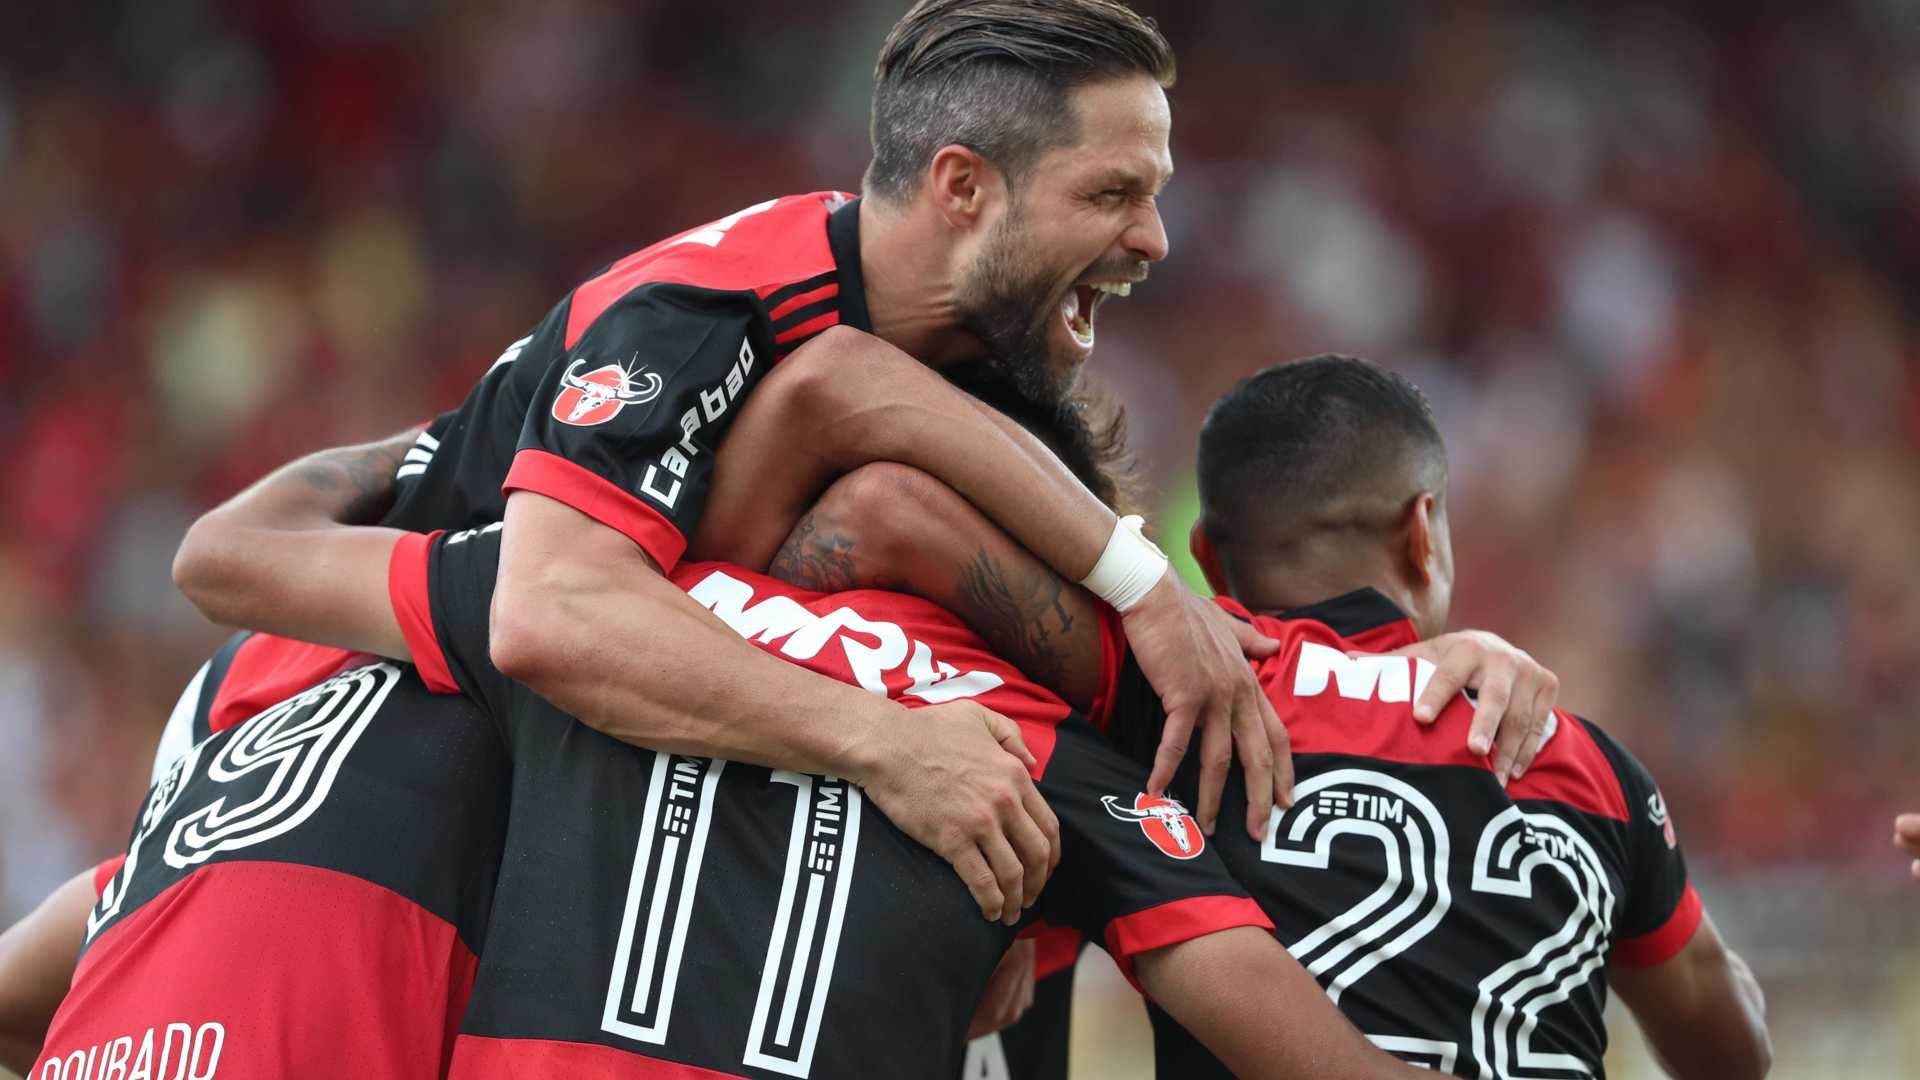  Gilvan de Souza/Flamengo